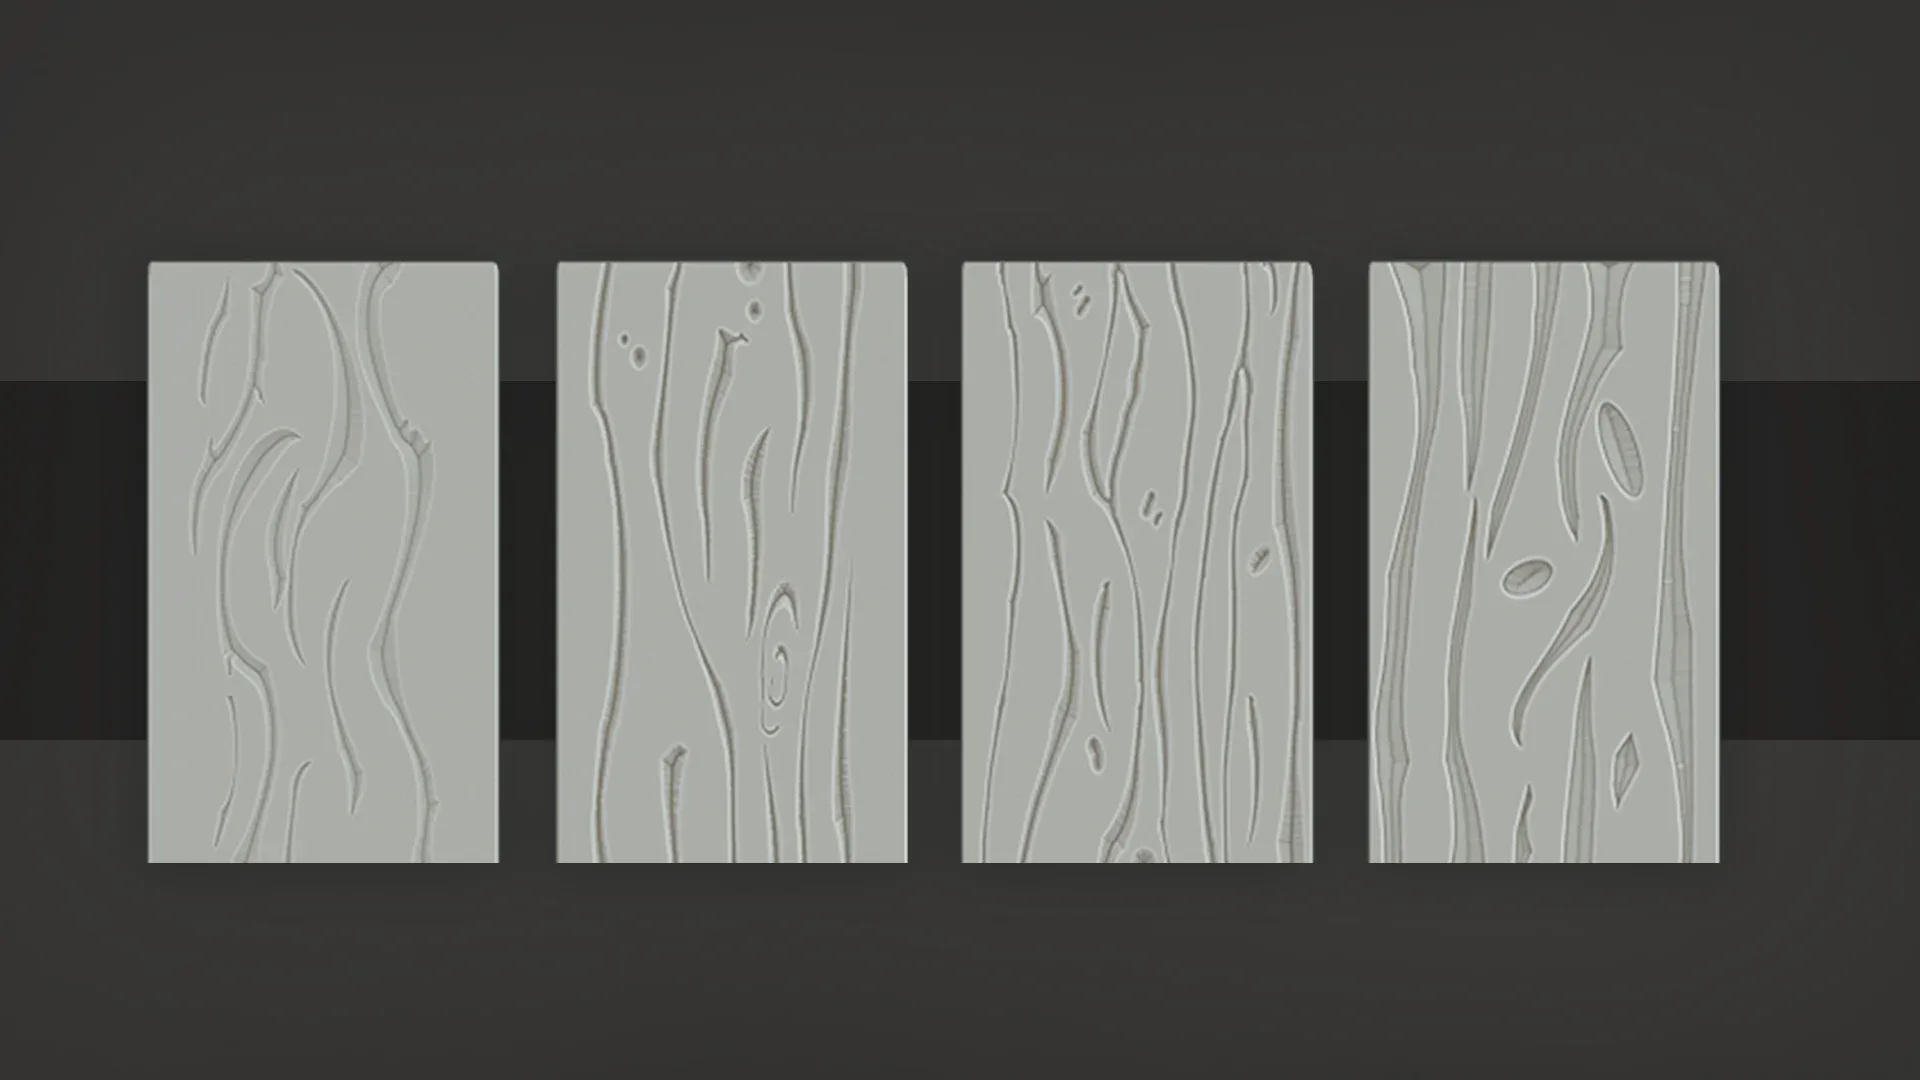 Stylized Wood Patterns